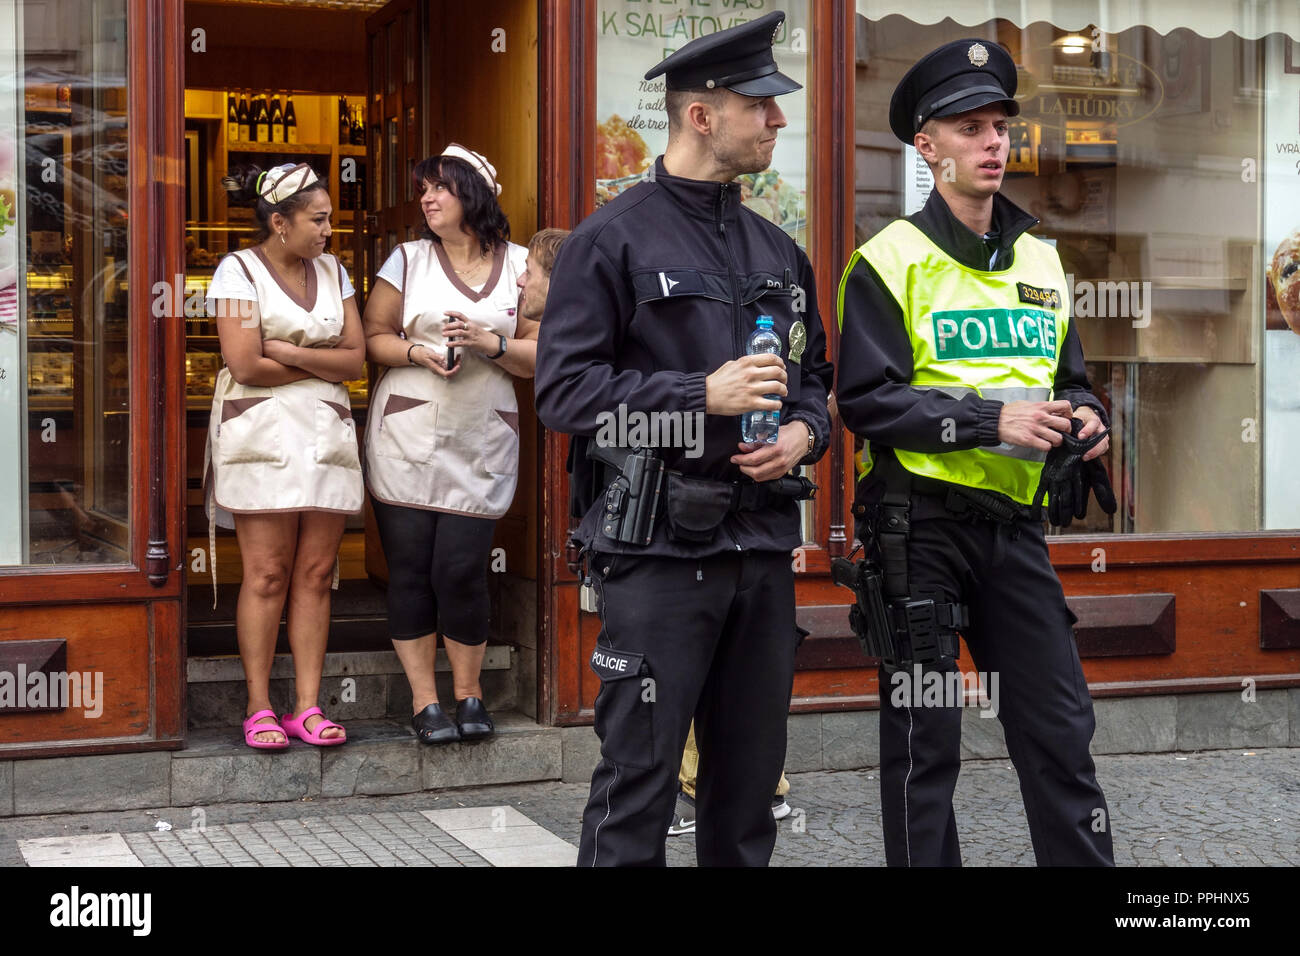 Uniforme della Repubblica ceca gli agenti di polizia e due saleswomen al di fuori del negozio, Praga, Repubblica Ceca Foto Stock